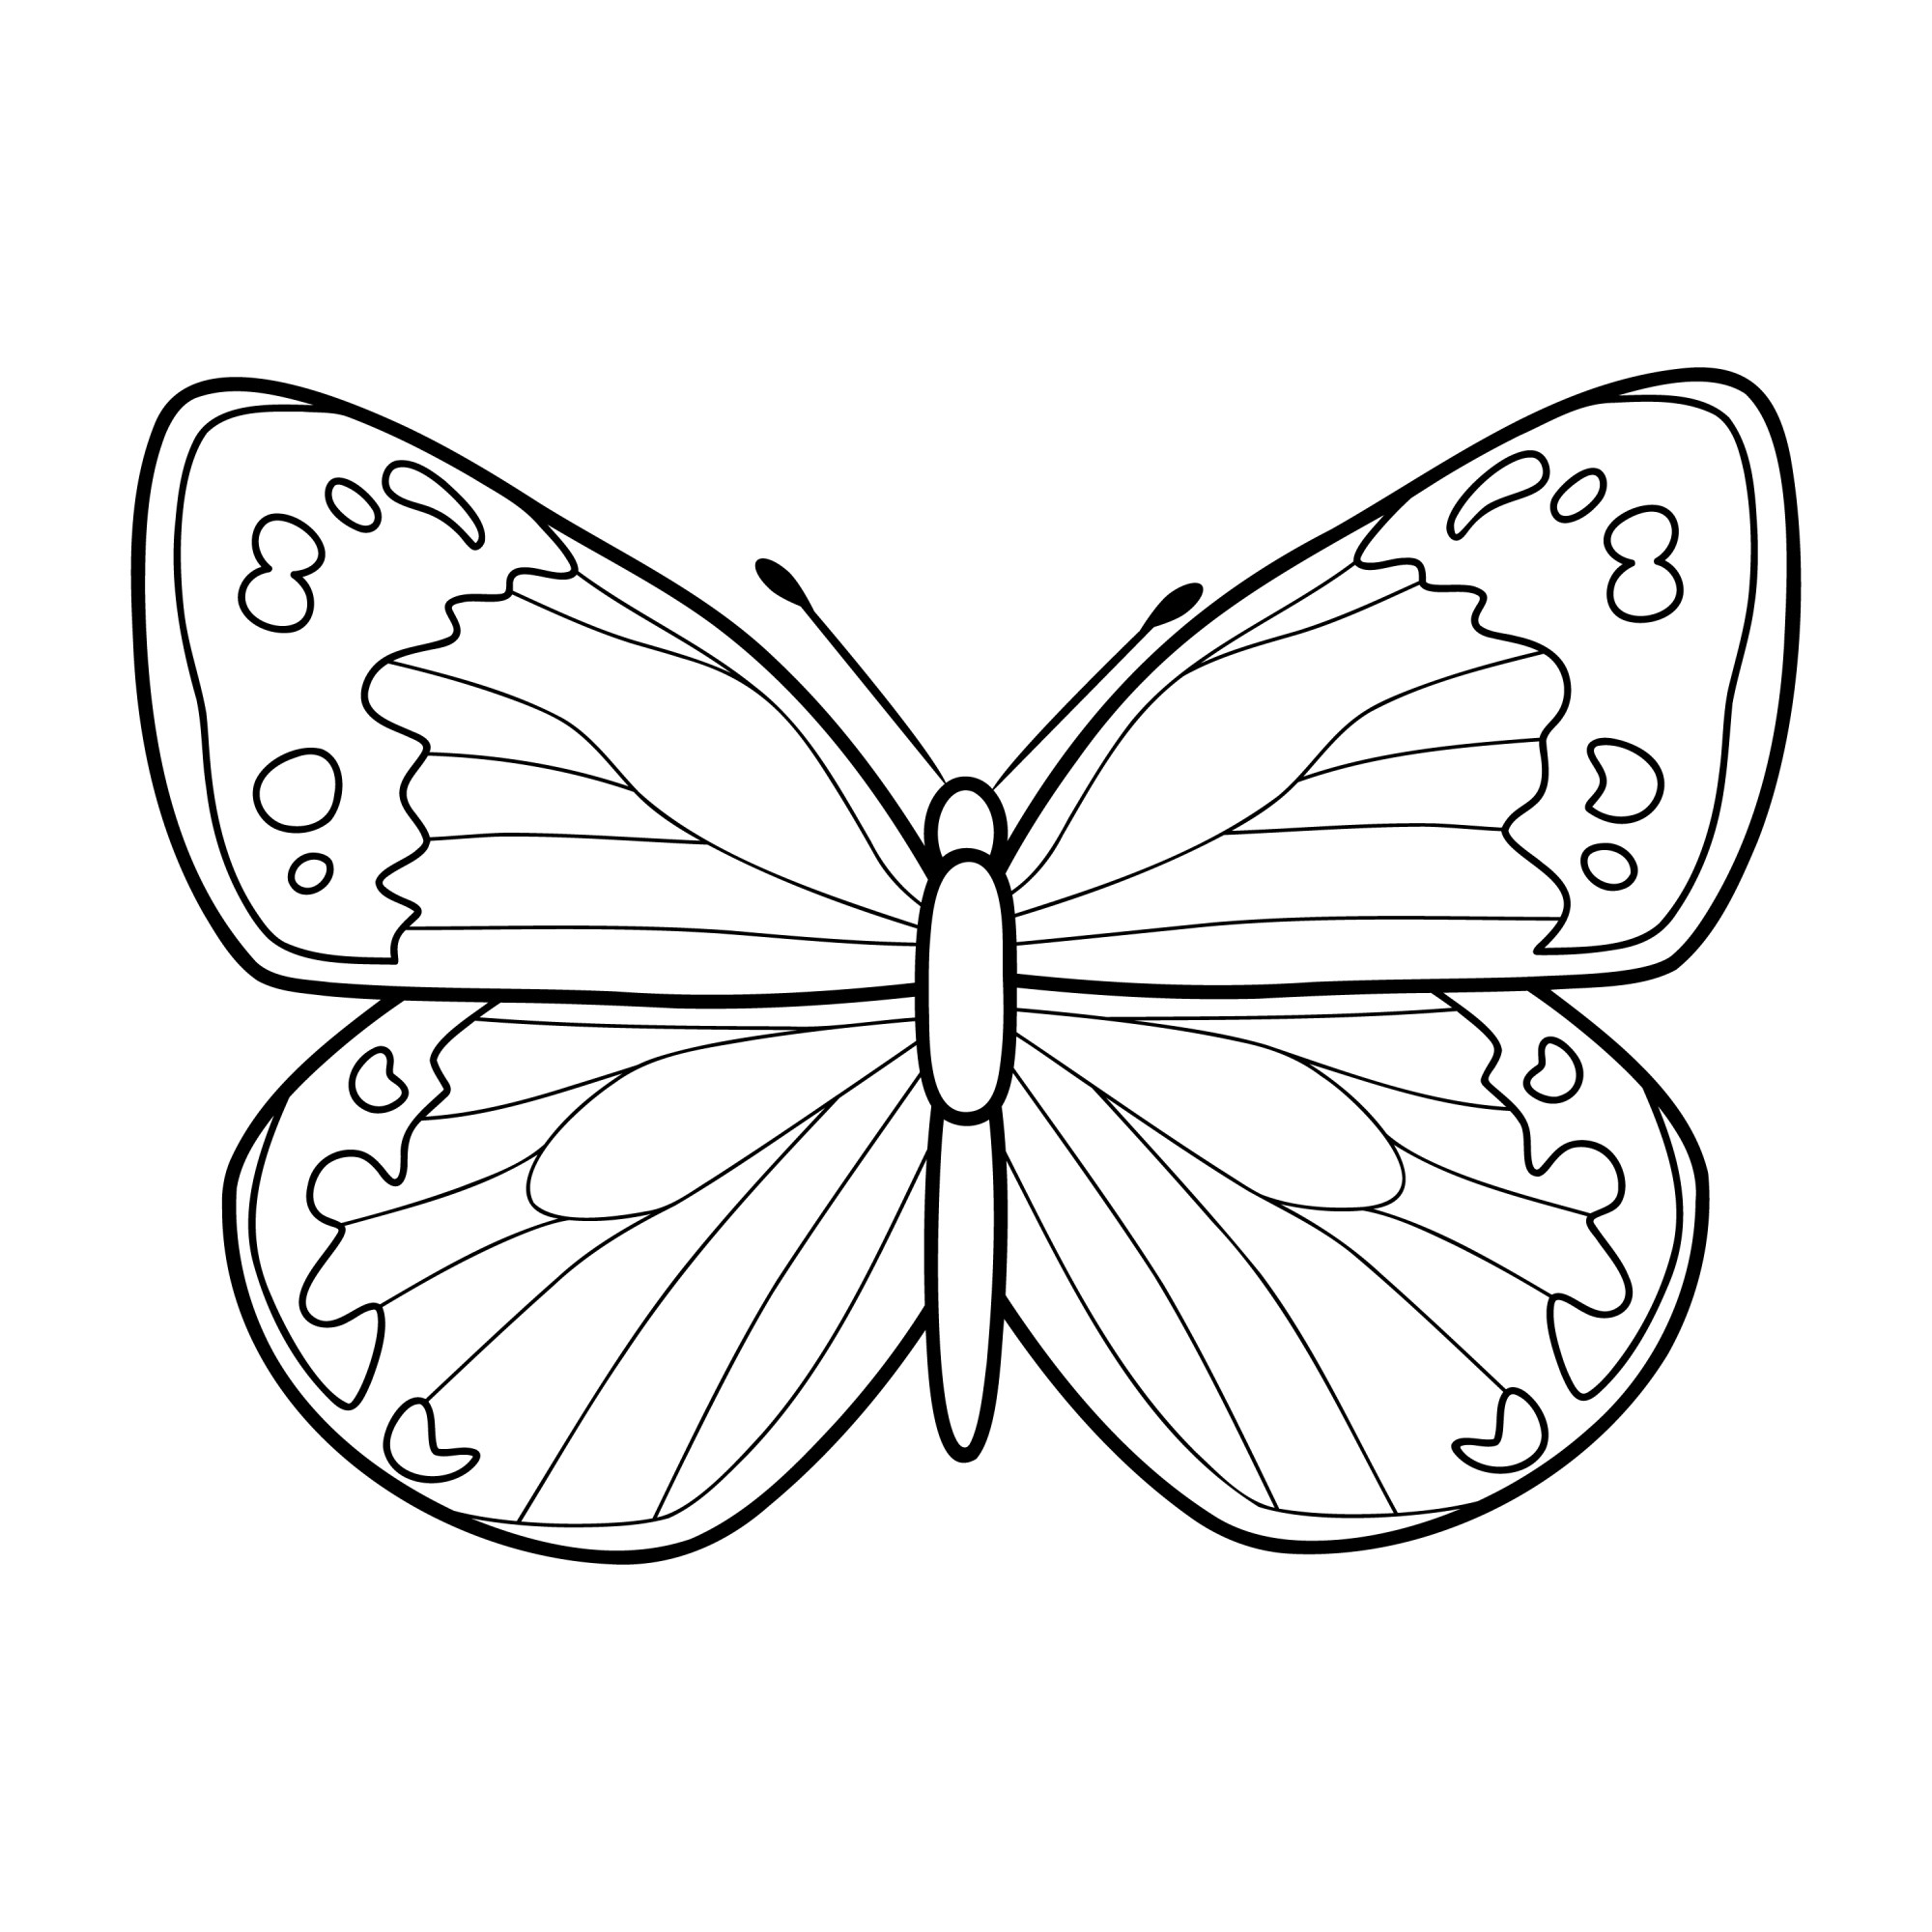 Раскраска для детей: бабочка с расправленными крыльями